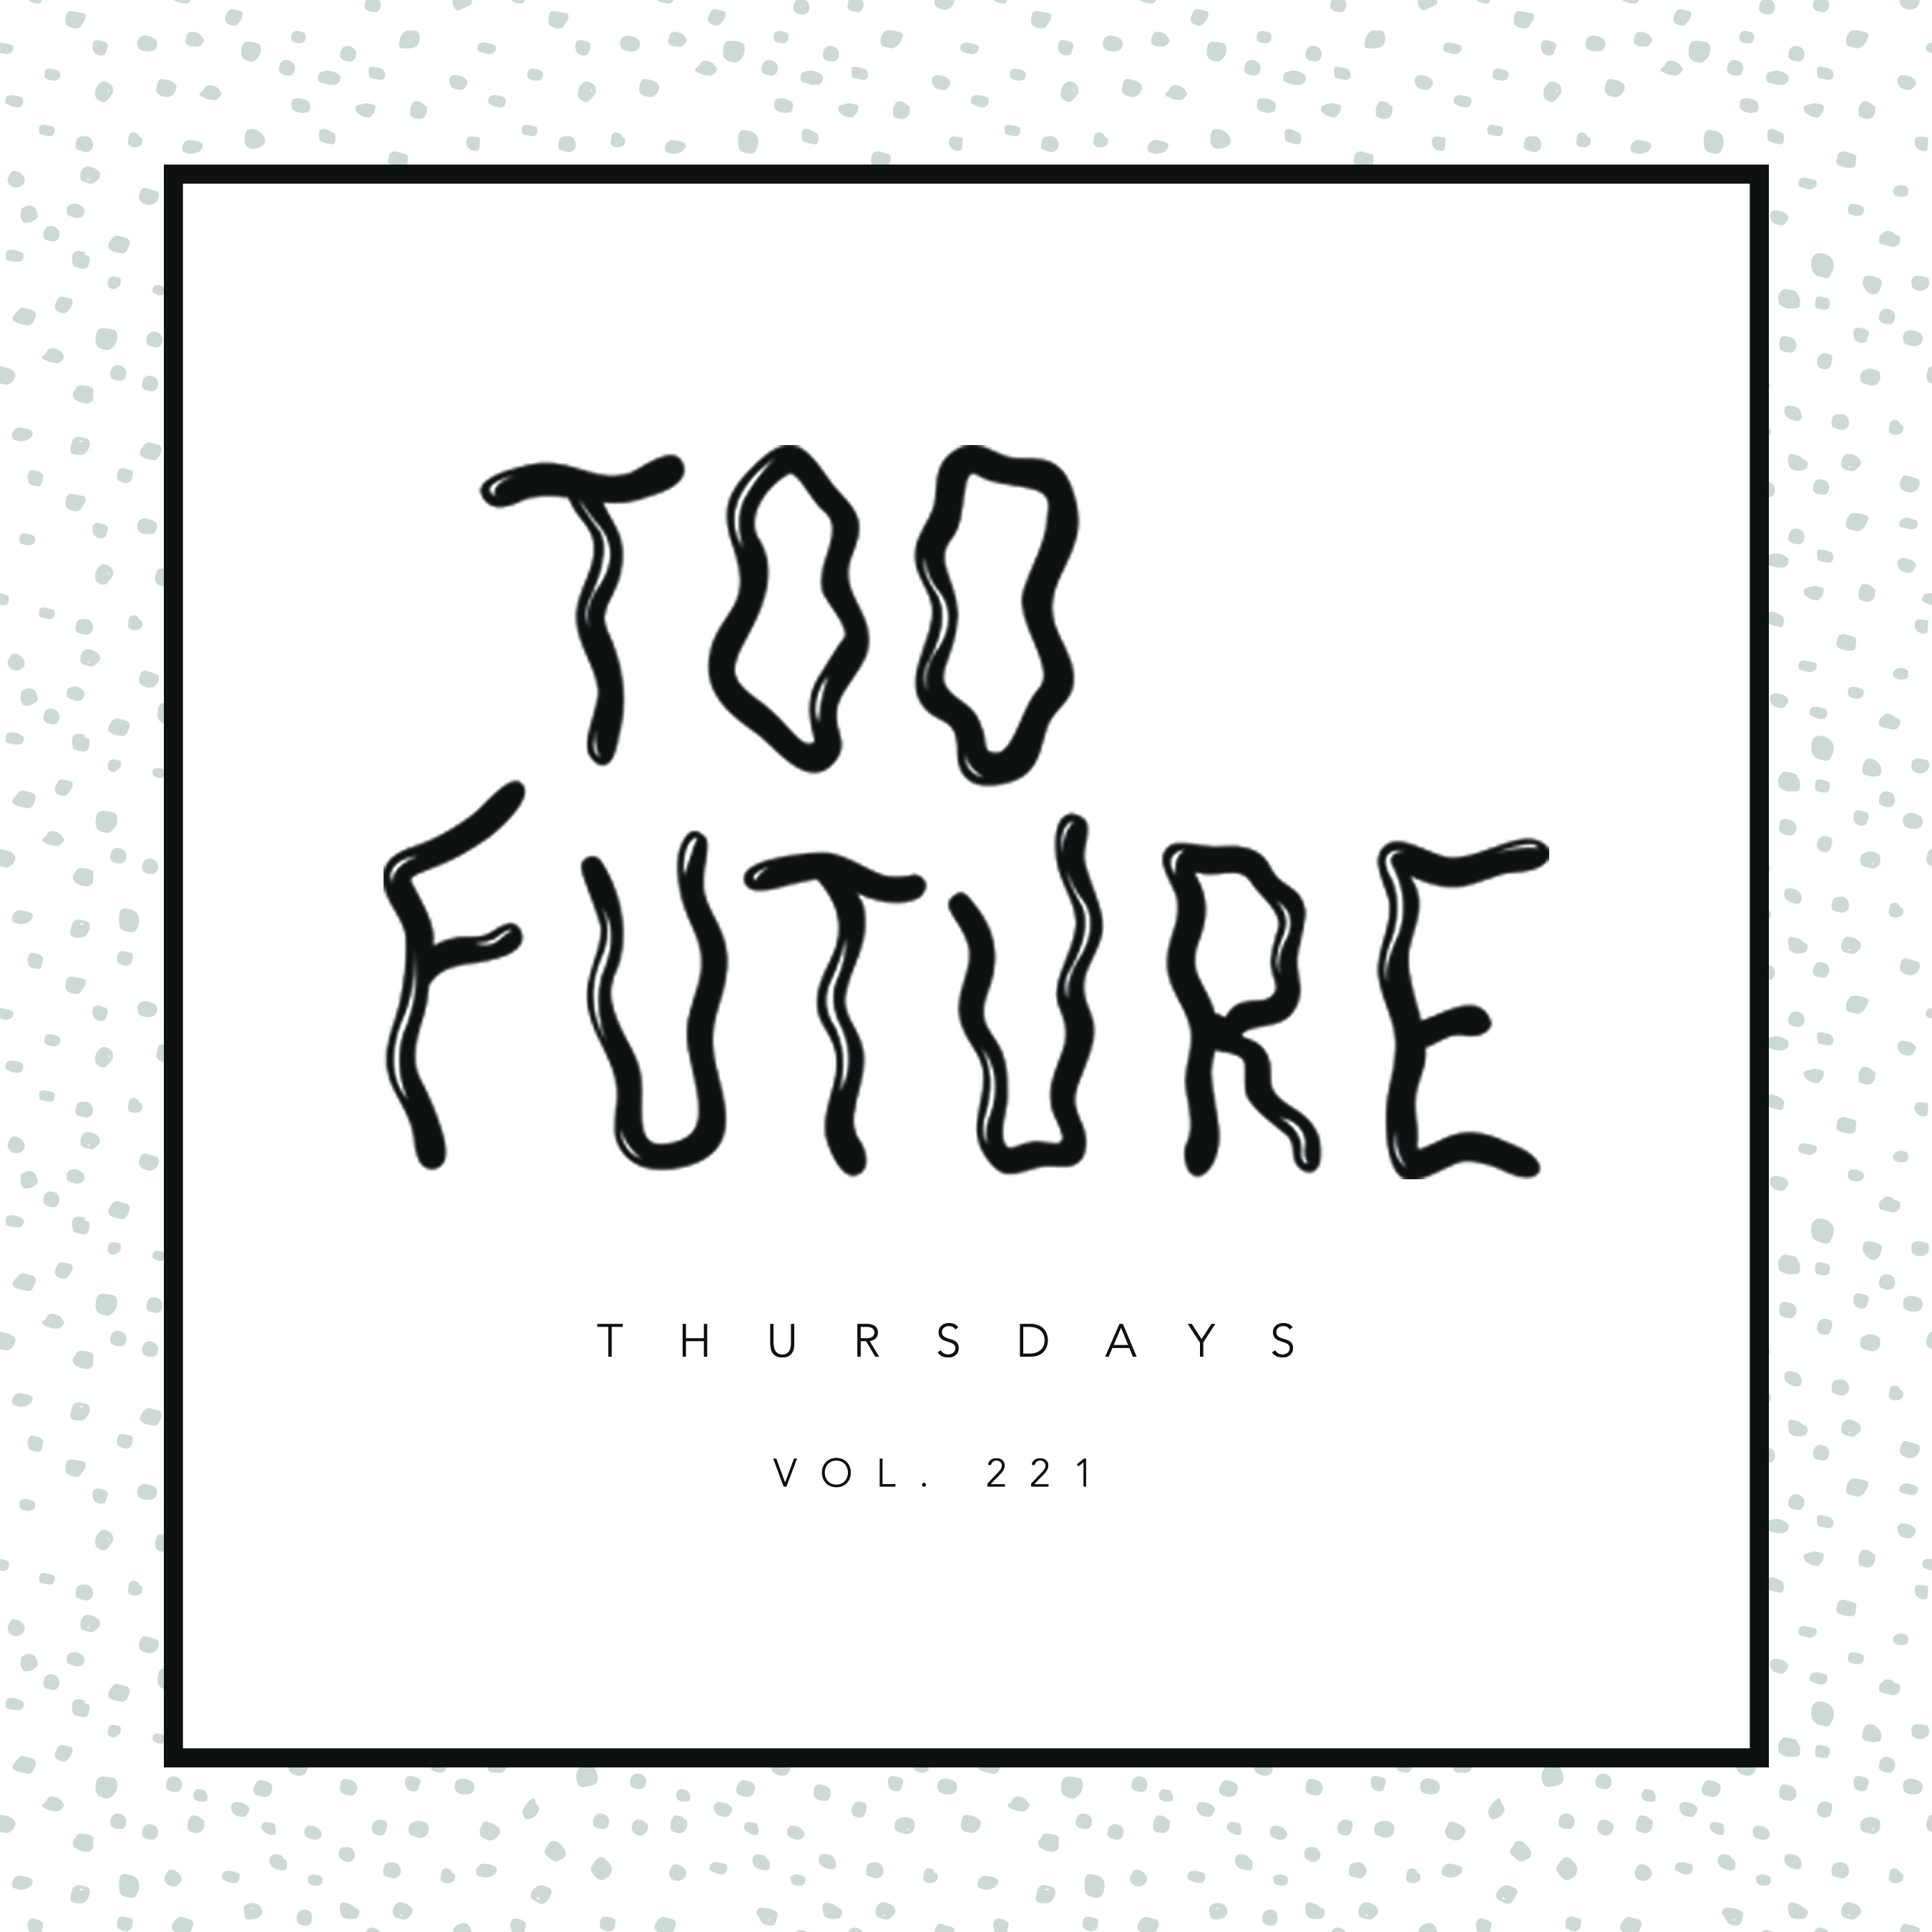 too-future-thursdays-vol-221